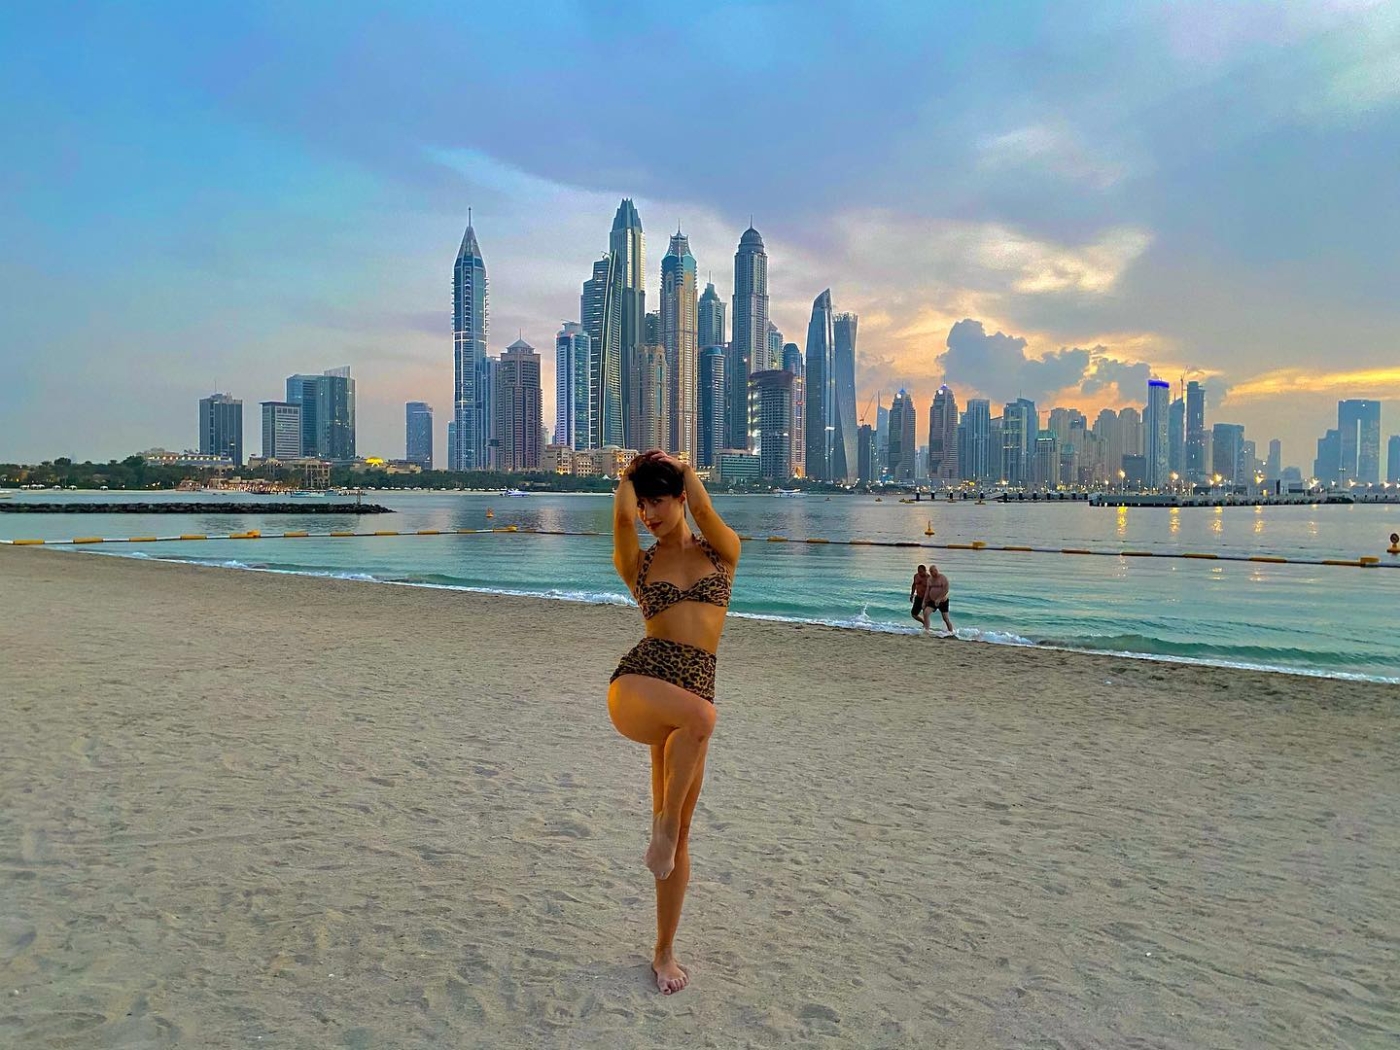 Pour Marie s’infiltre, Dubaï est « un eldorado pour dégénérés » (Instagram/@mariesinfiltre)